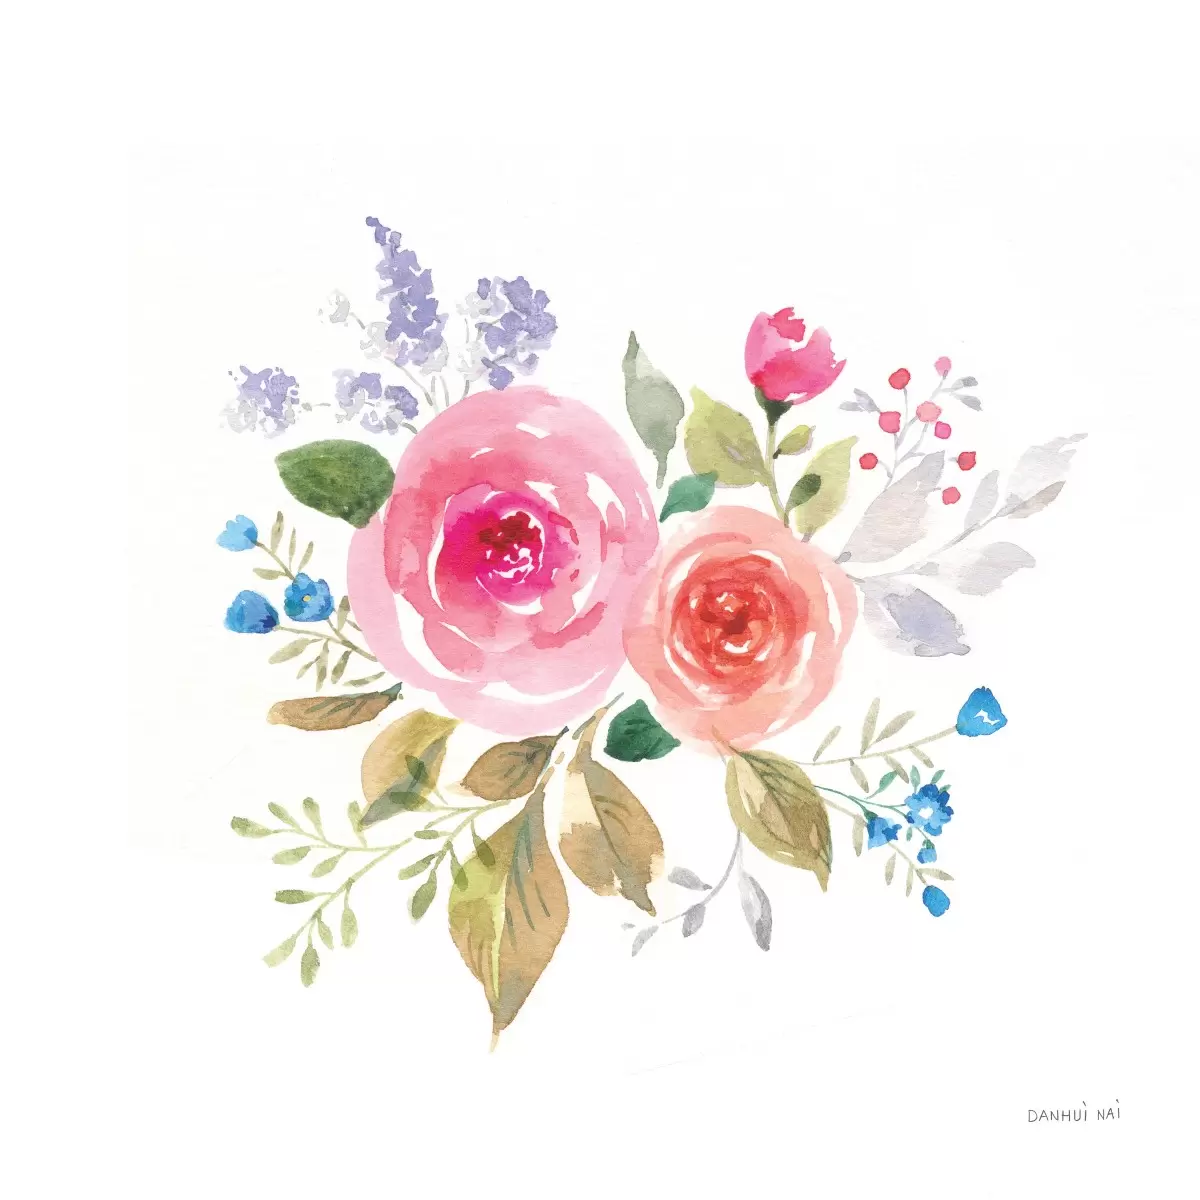 פרחי וינטג עדינים - Danhui Nai - תמונות לסלון רגוע ונעים איור רישום בצבע  - מק''ט: 390001